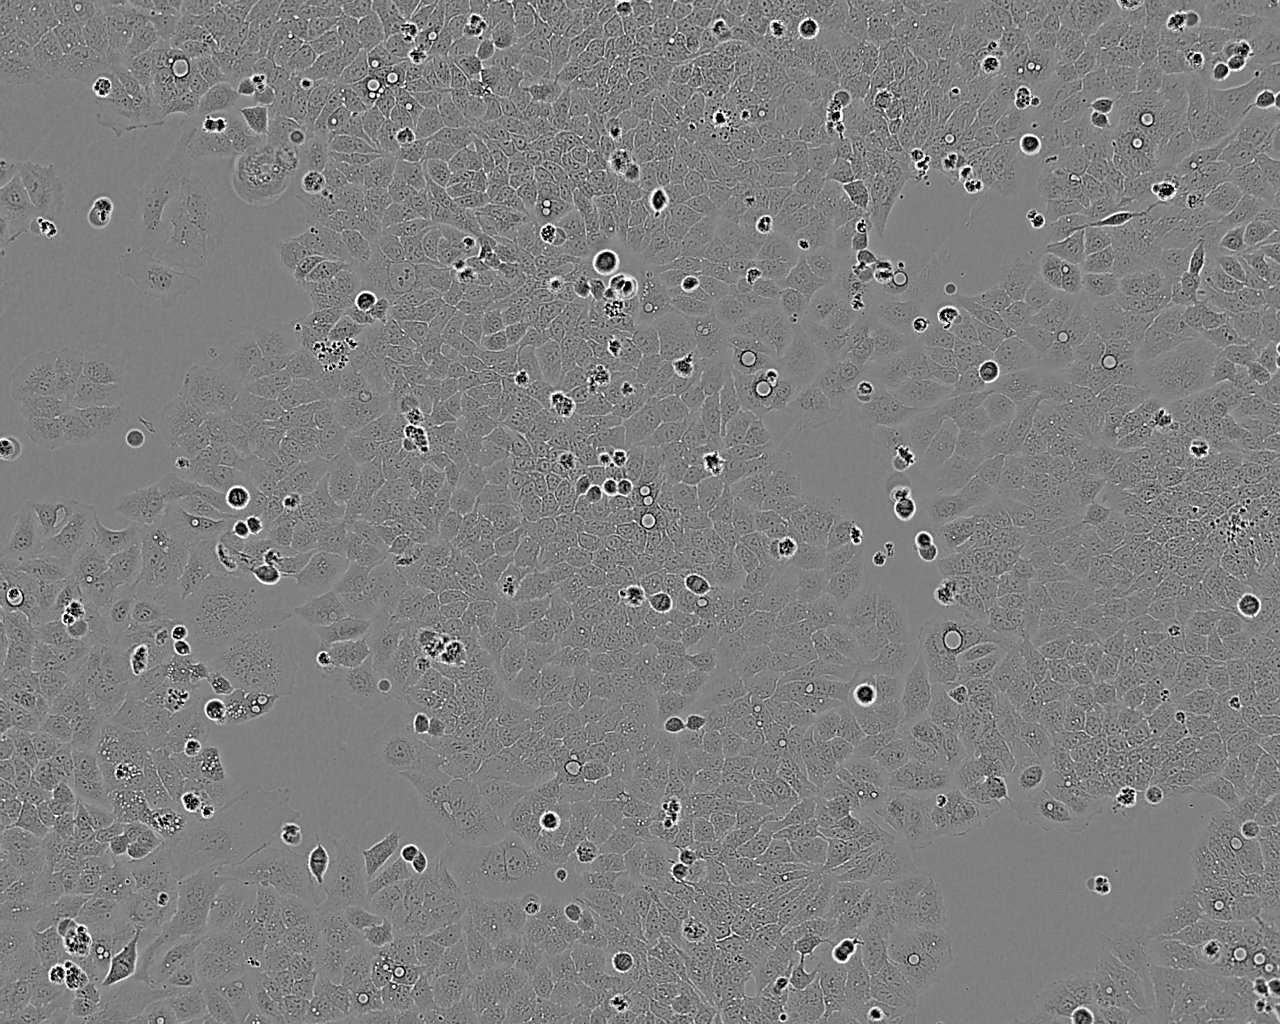 SK-N-BE(1) cell line人神经母细胞系